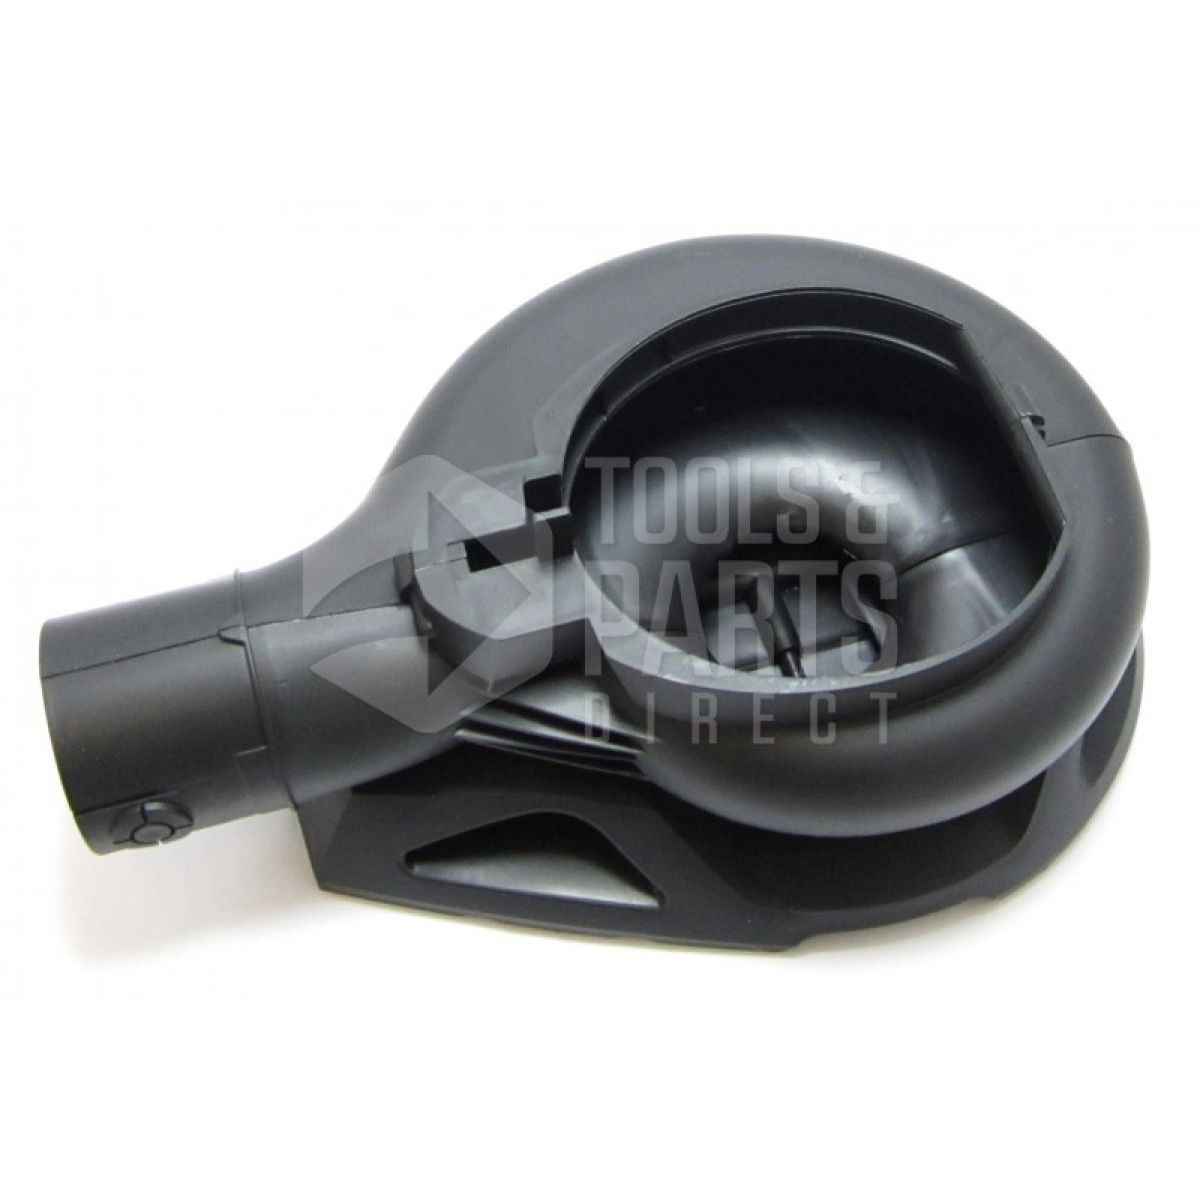 Black & Decker GW225 Type 1 Blowvac Spare Parts - Part Shop Direct